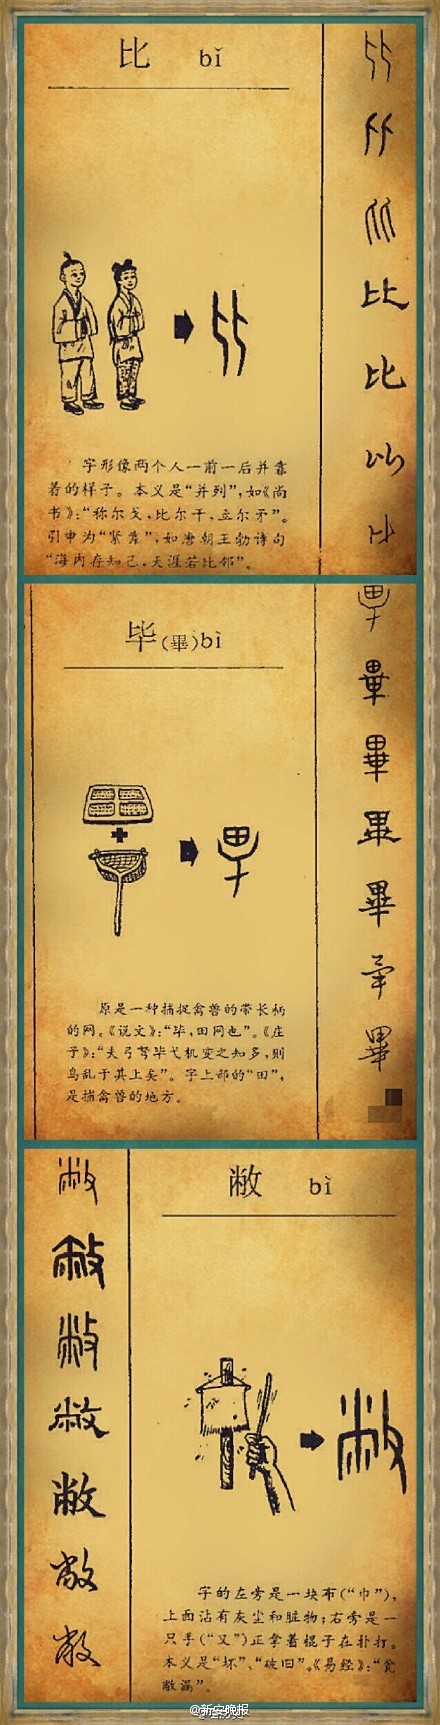 《汉字演变集萃》】汉字,记录汉语的文字